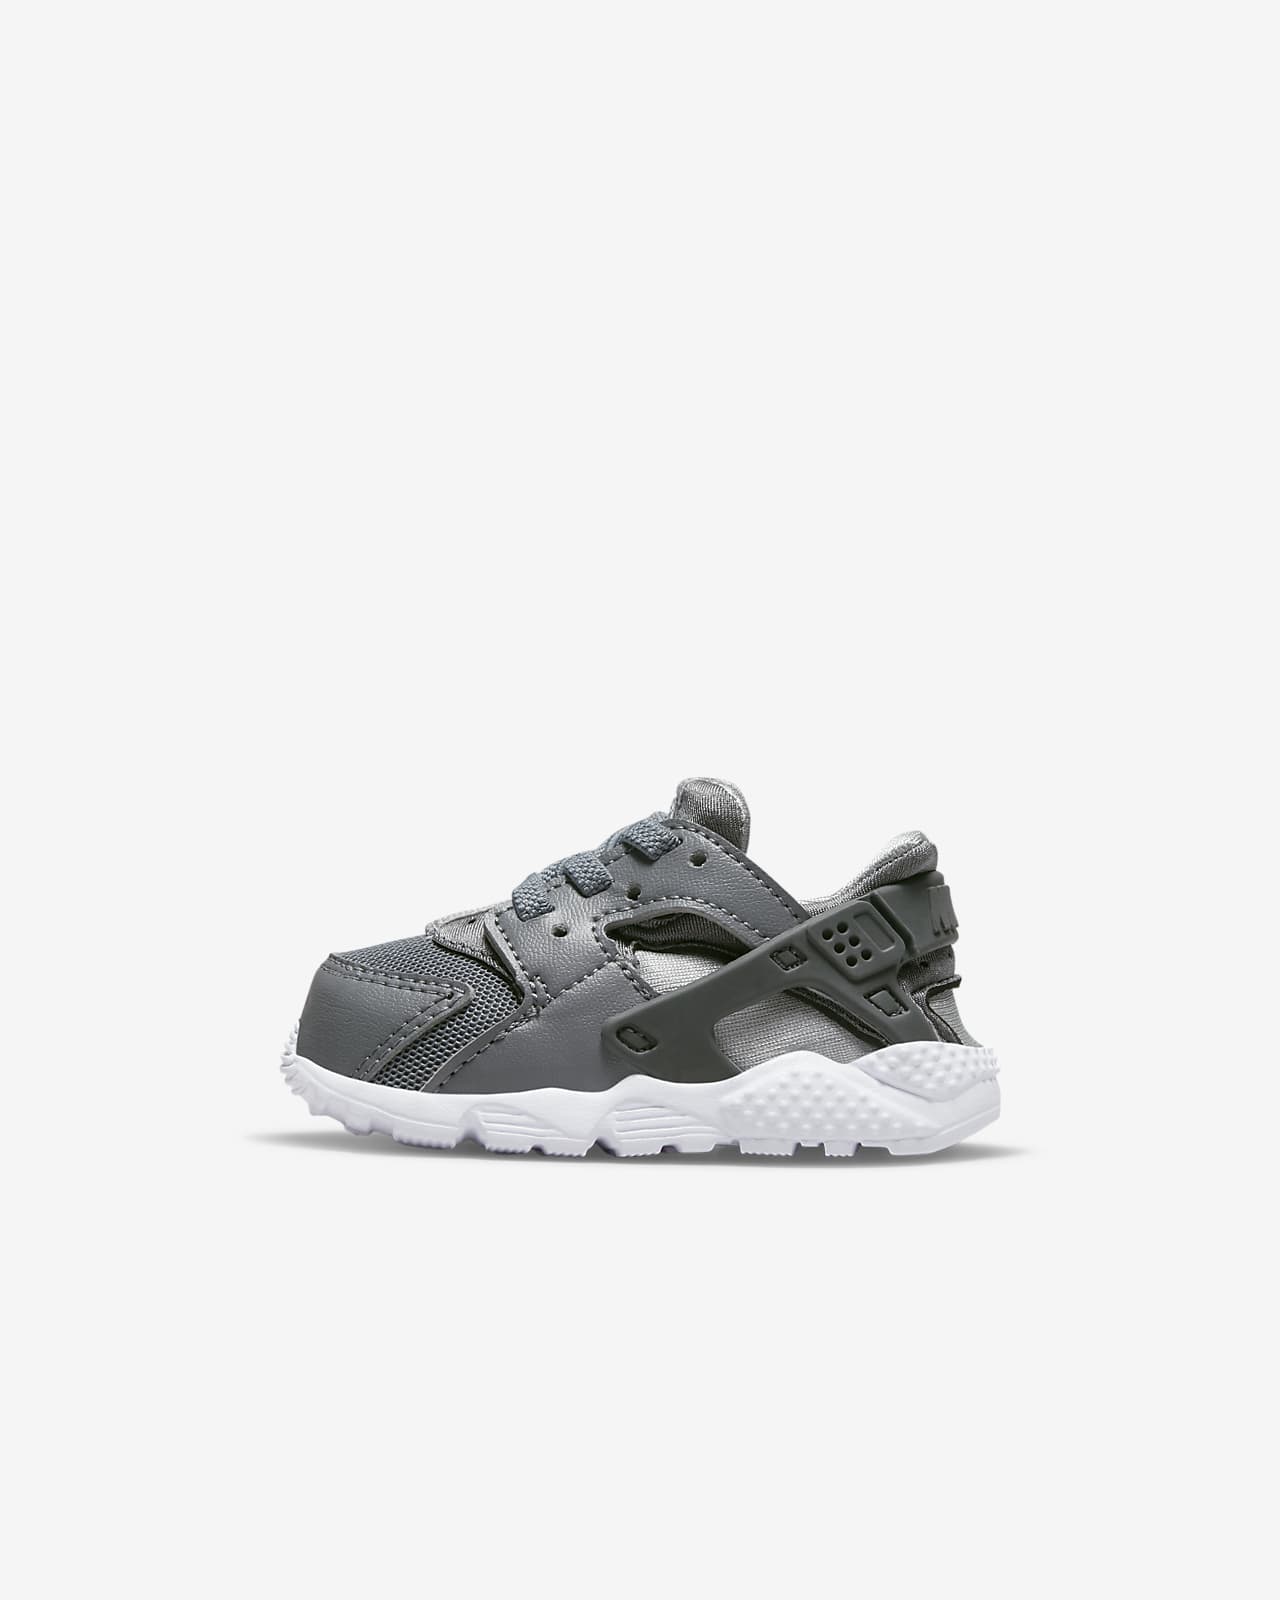 Nike Huarache Baby & Toddler Shoe